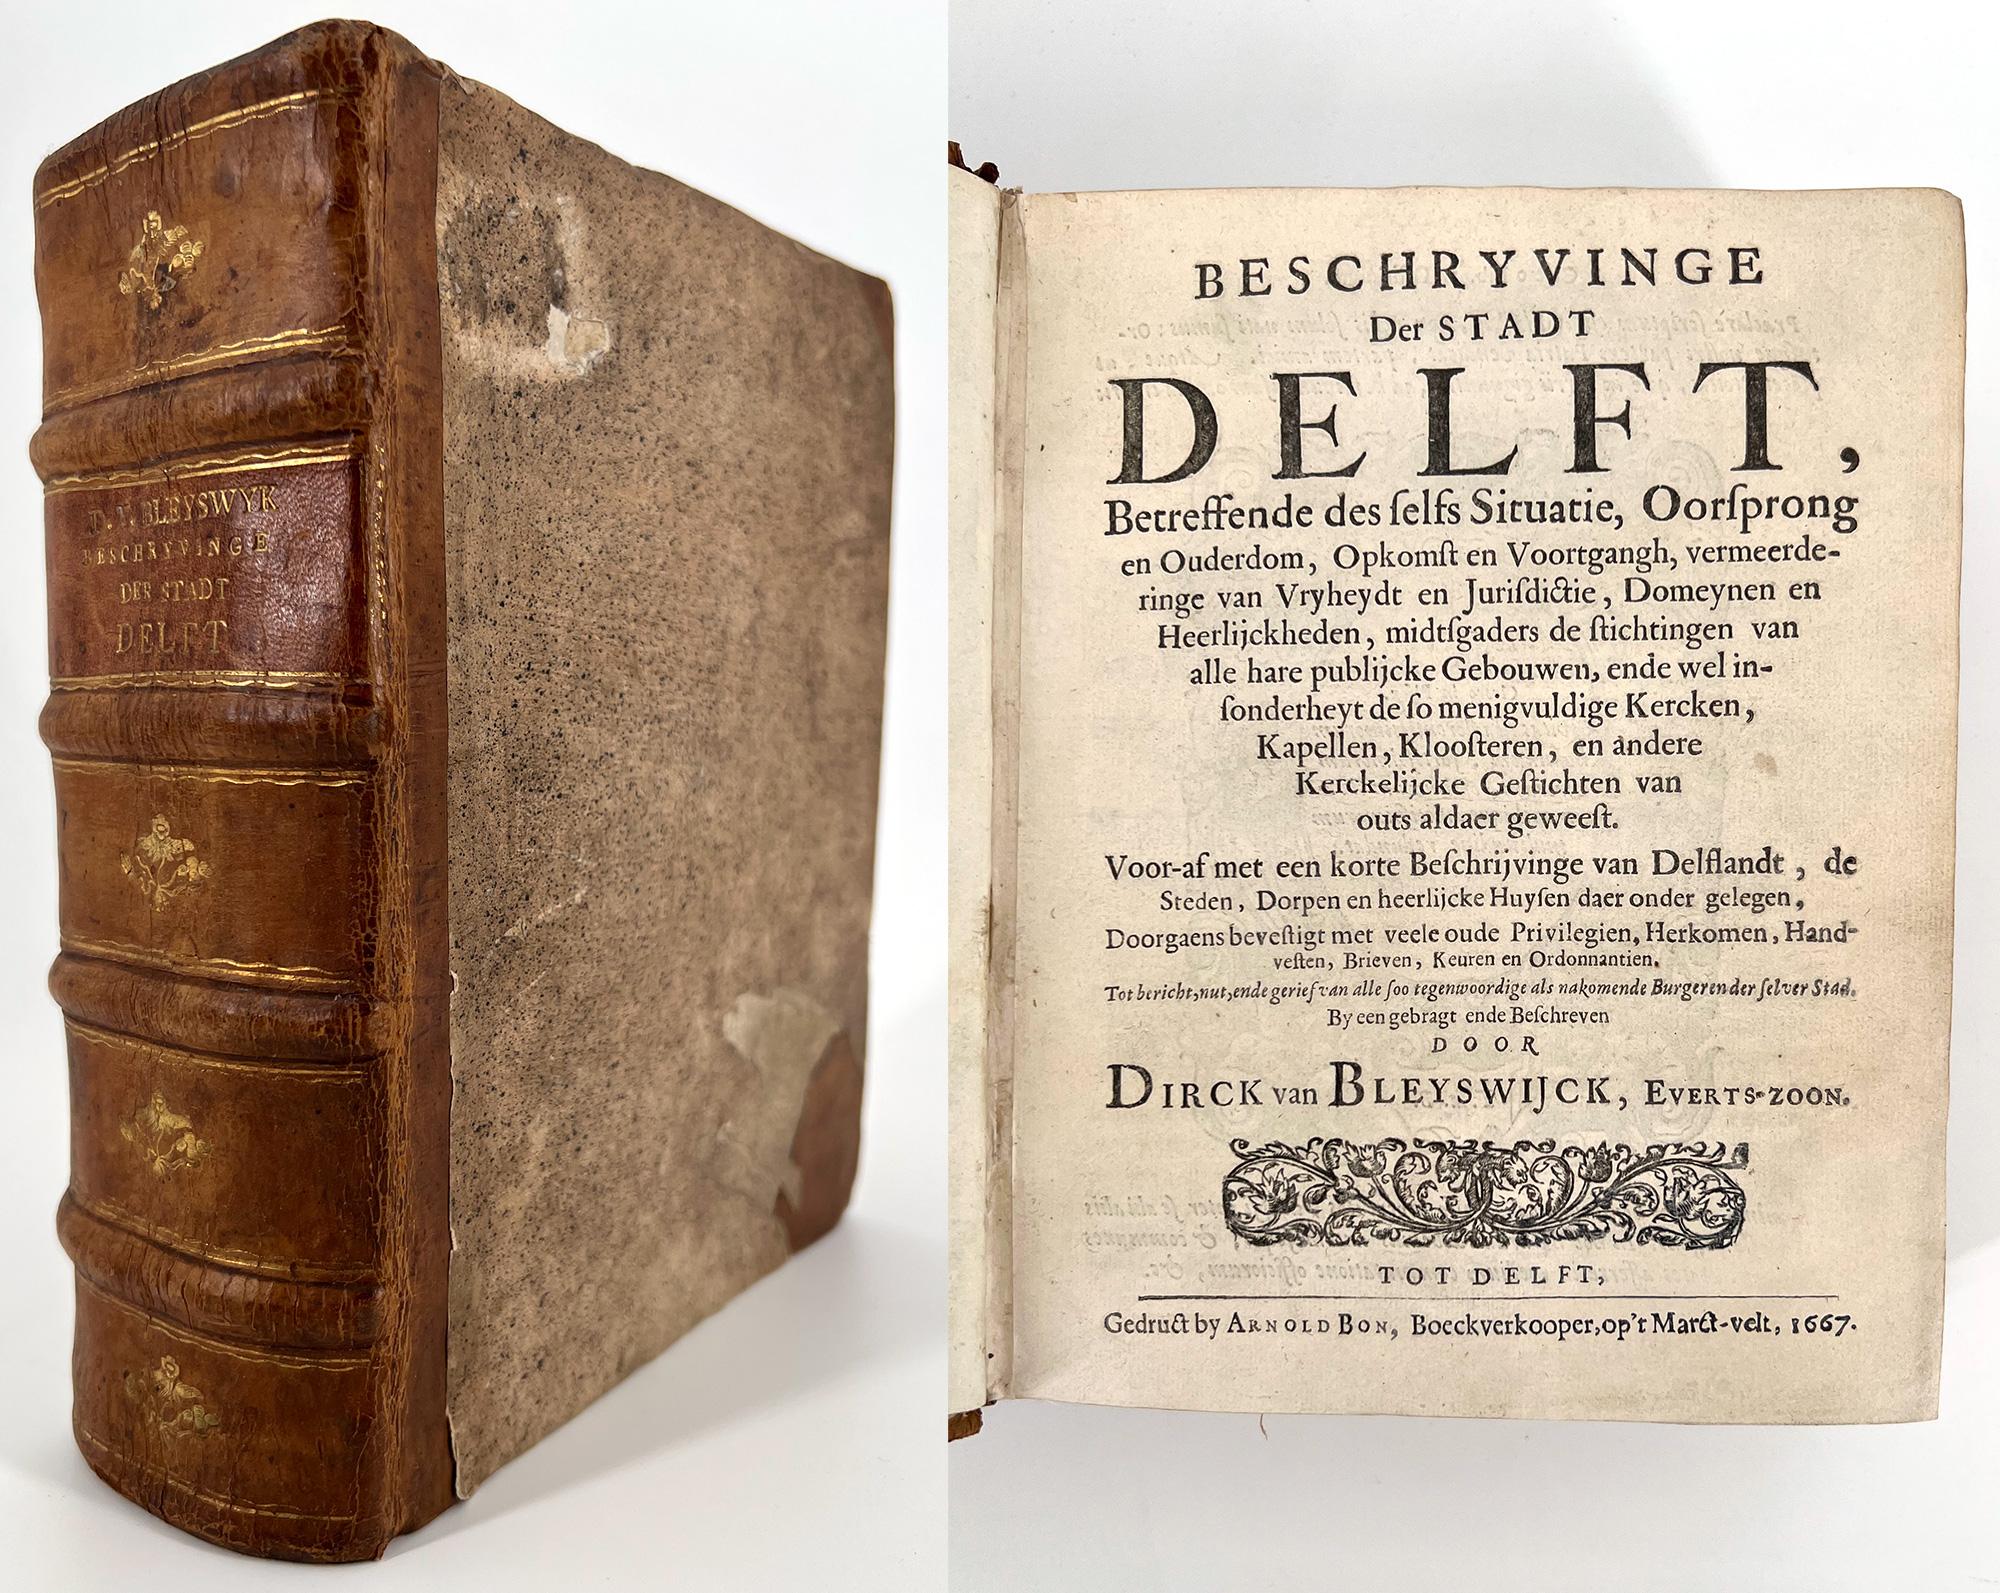 Très bon exemplaire de la célèbre description par Bleyswijck de l'histoire, de la topographie, des institutions et de la vie commerciale de Delft au XVIIe siècle. Les planches sont des représentations exquises de Delft et de ses environs, avec une